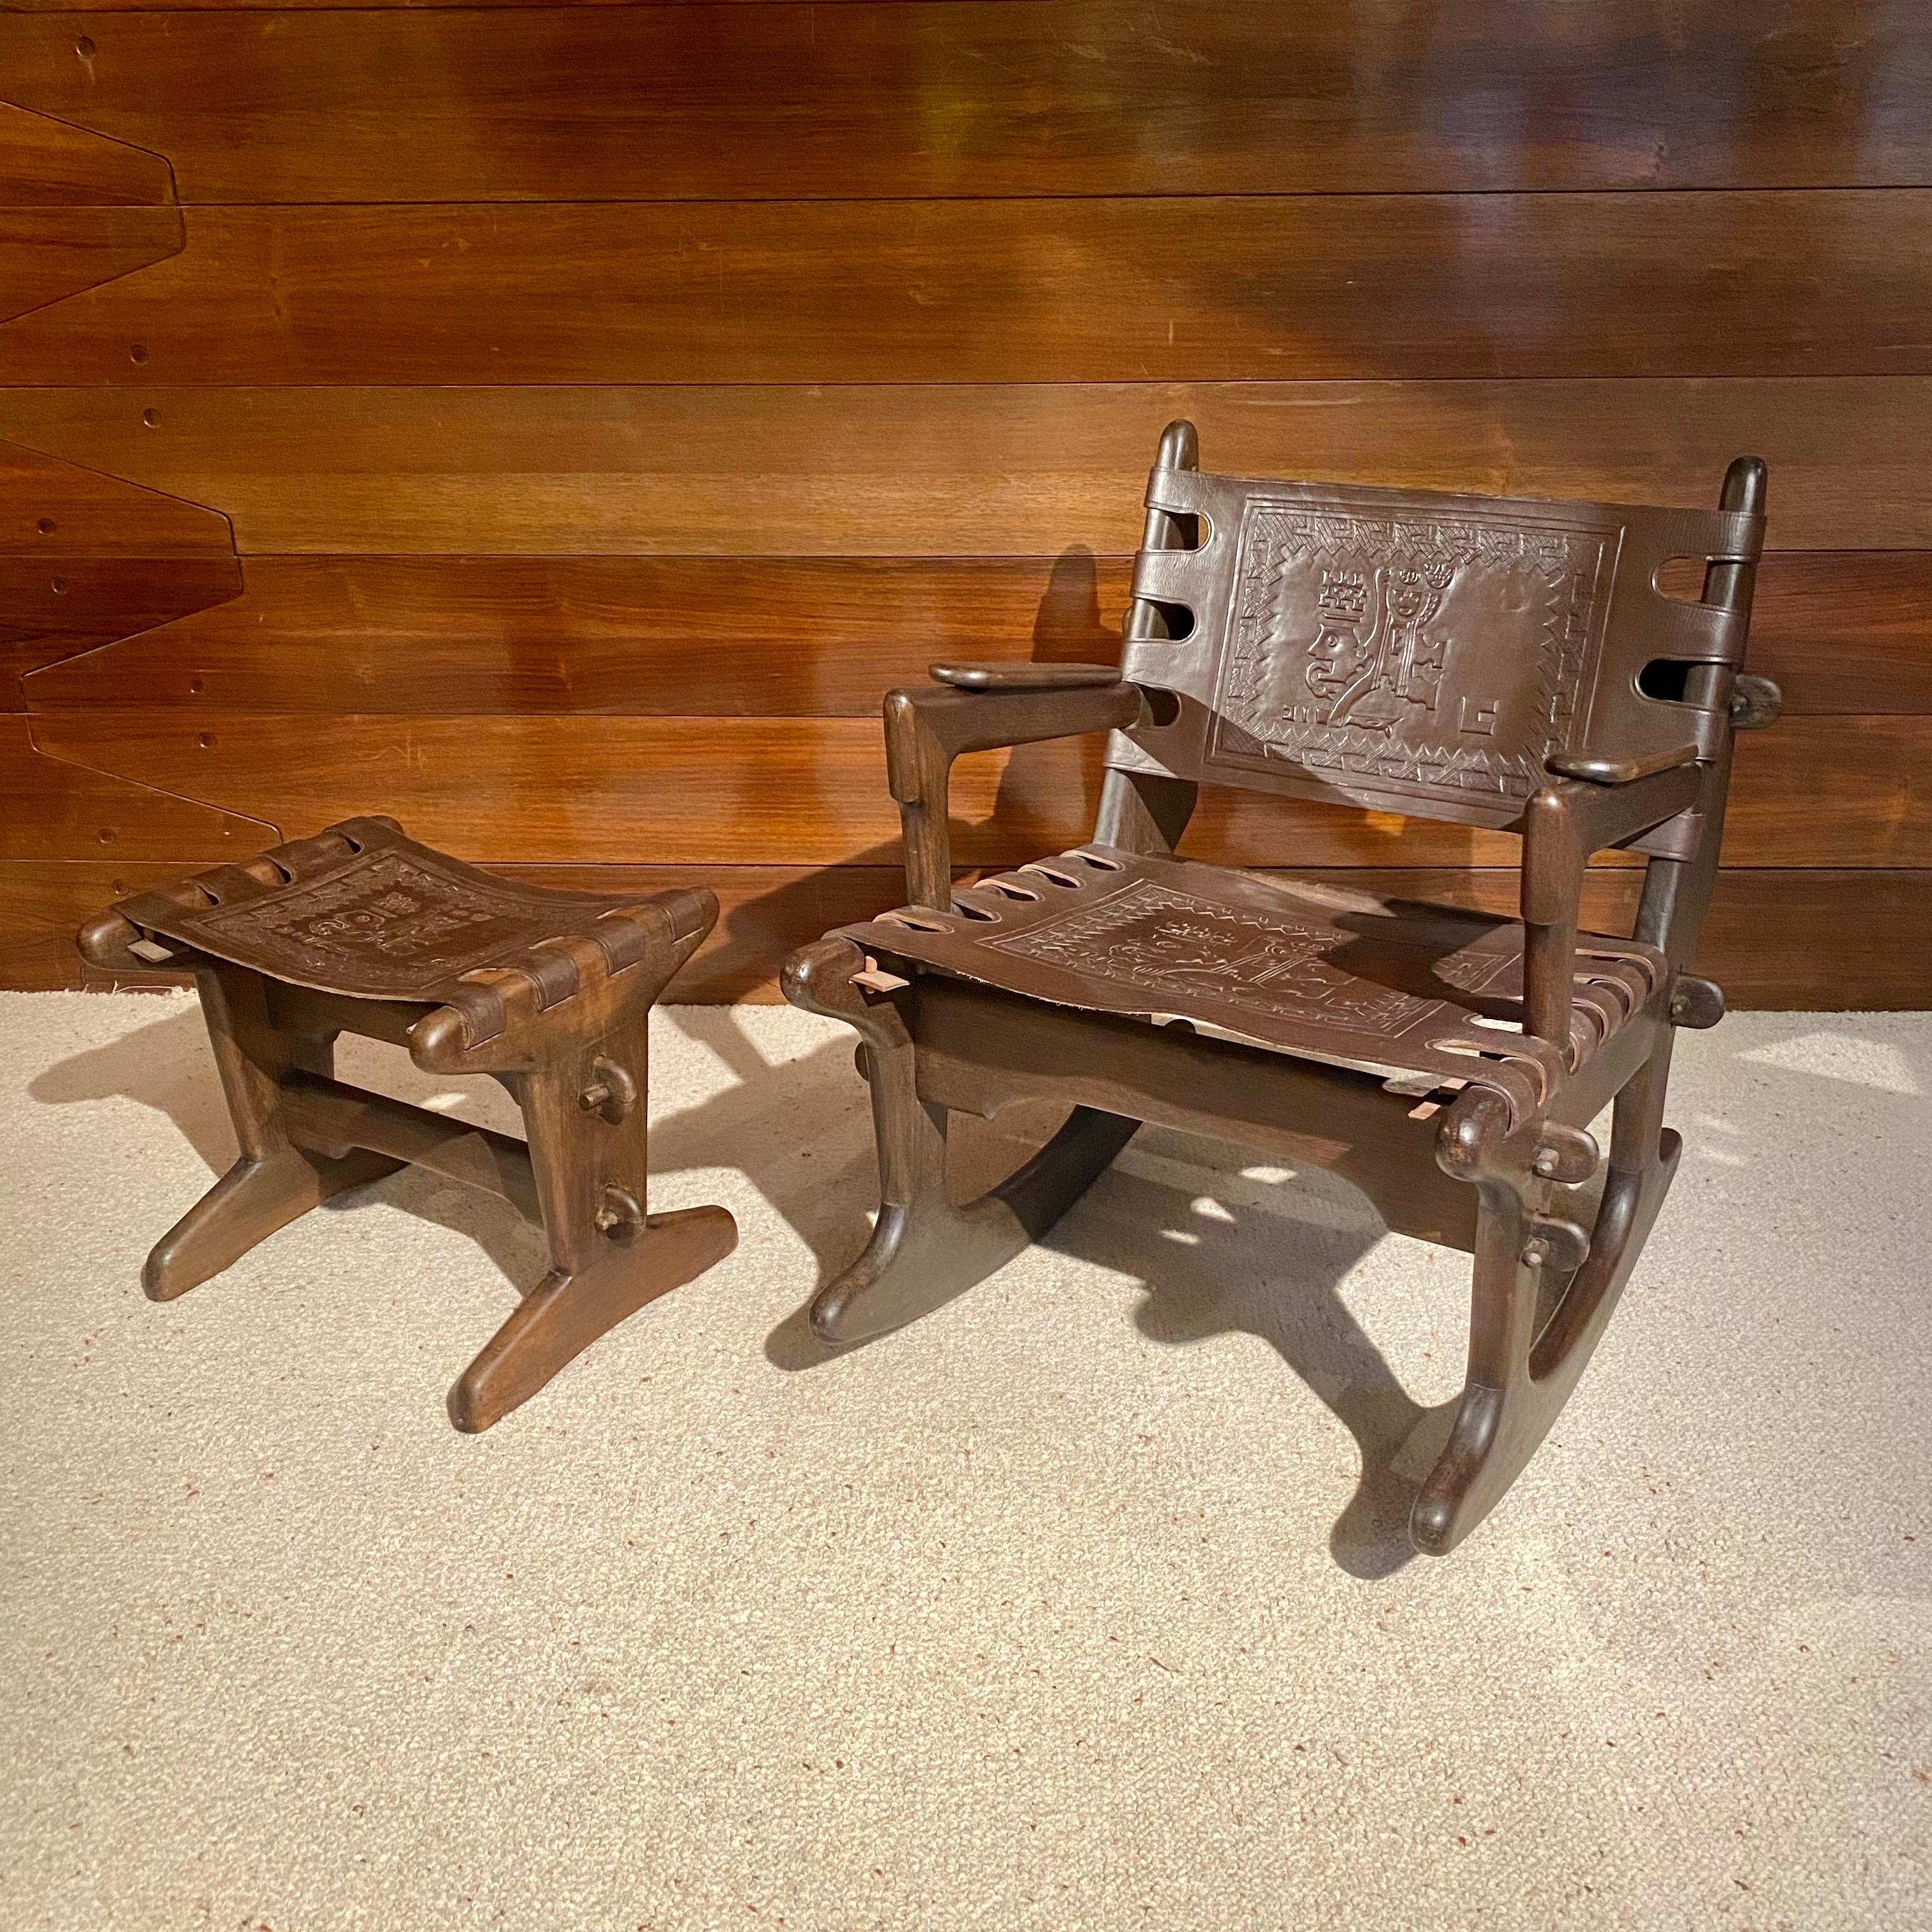 Chaise à bascule et repose-pieds en bois et cuir par Angel Pazmino pour Meubles De Estilo Ecuador, années 1970.
Ces pièces sont dotées d'un cadre en bois et d'un cuir épais sculpté.
Chaise à bascule 75cm×60cm×80cm hauteur du siège